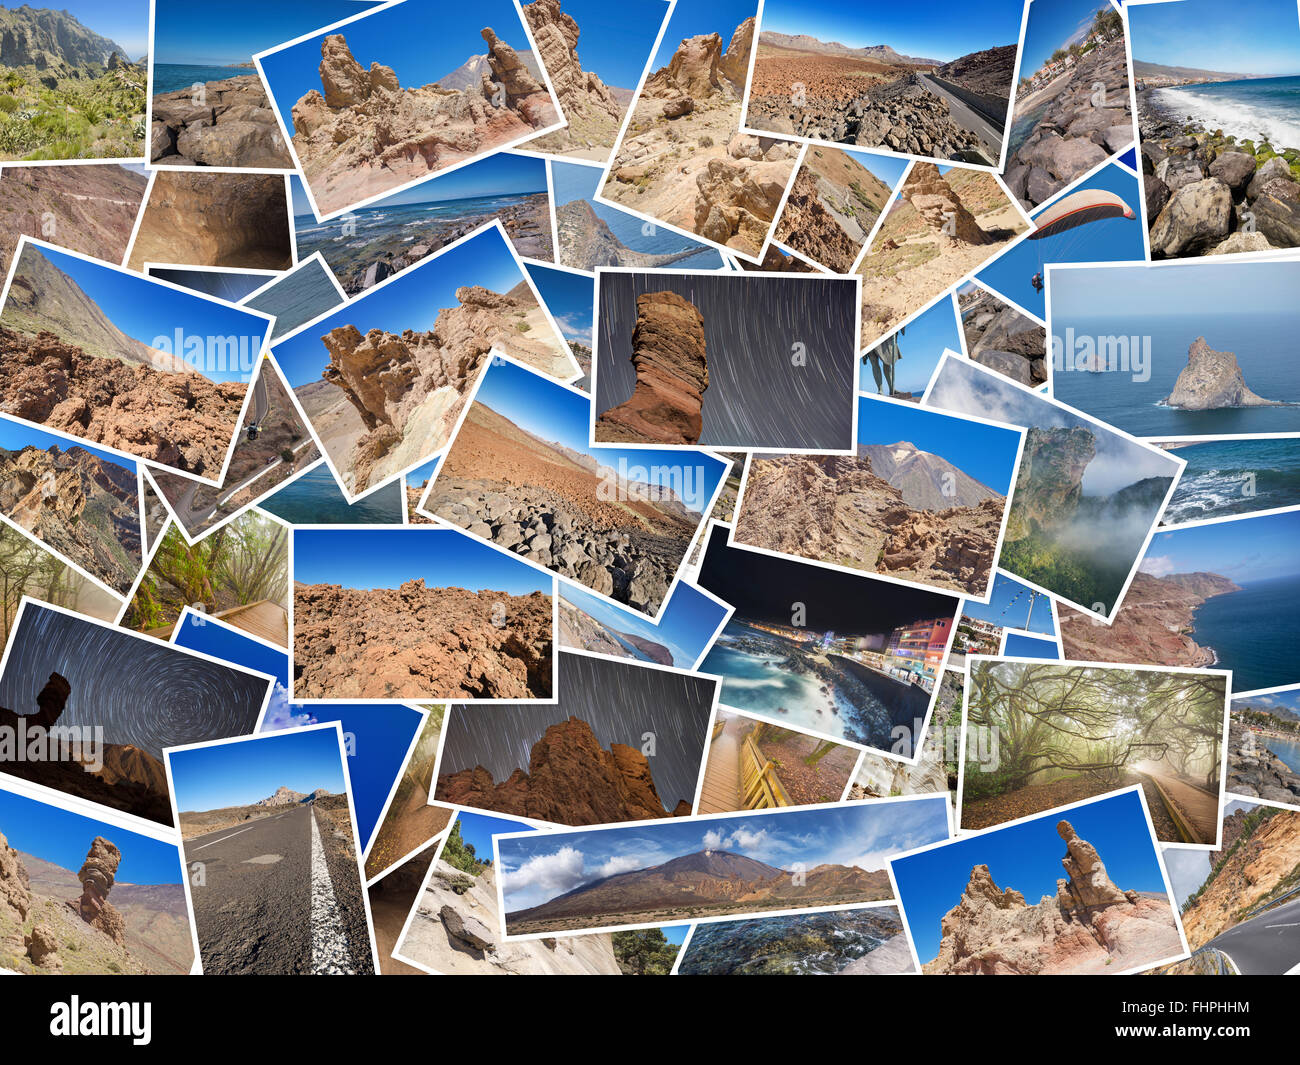 Un collage de mes meilleures photos de voyage Tenerife, Îles de canaries, espagne. Version 1 Banque D'Images